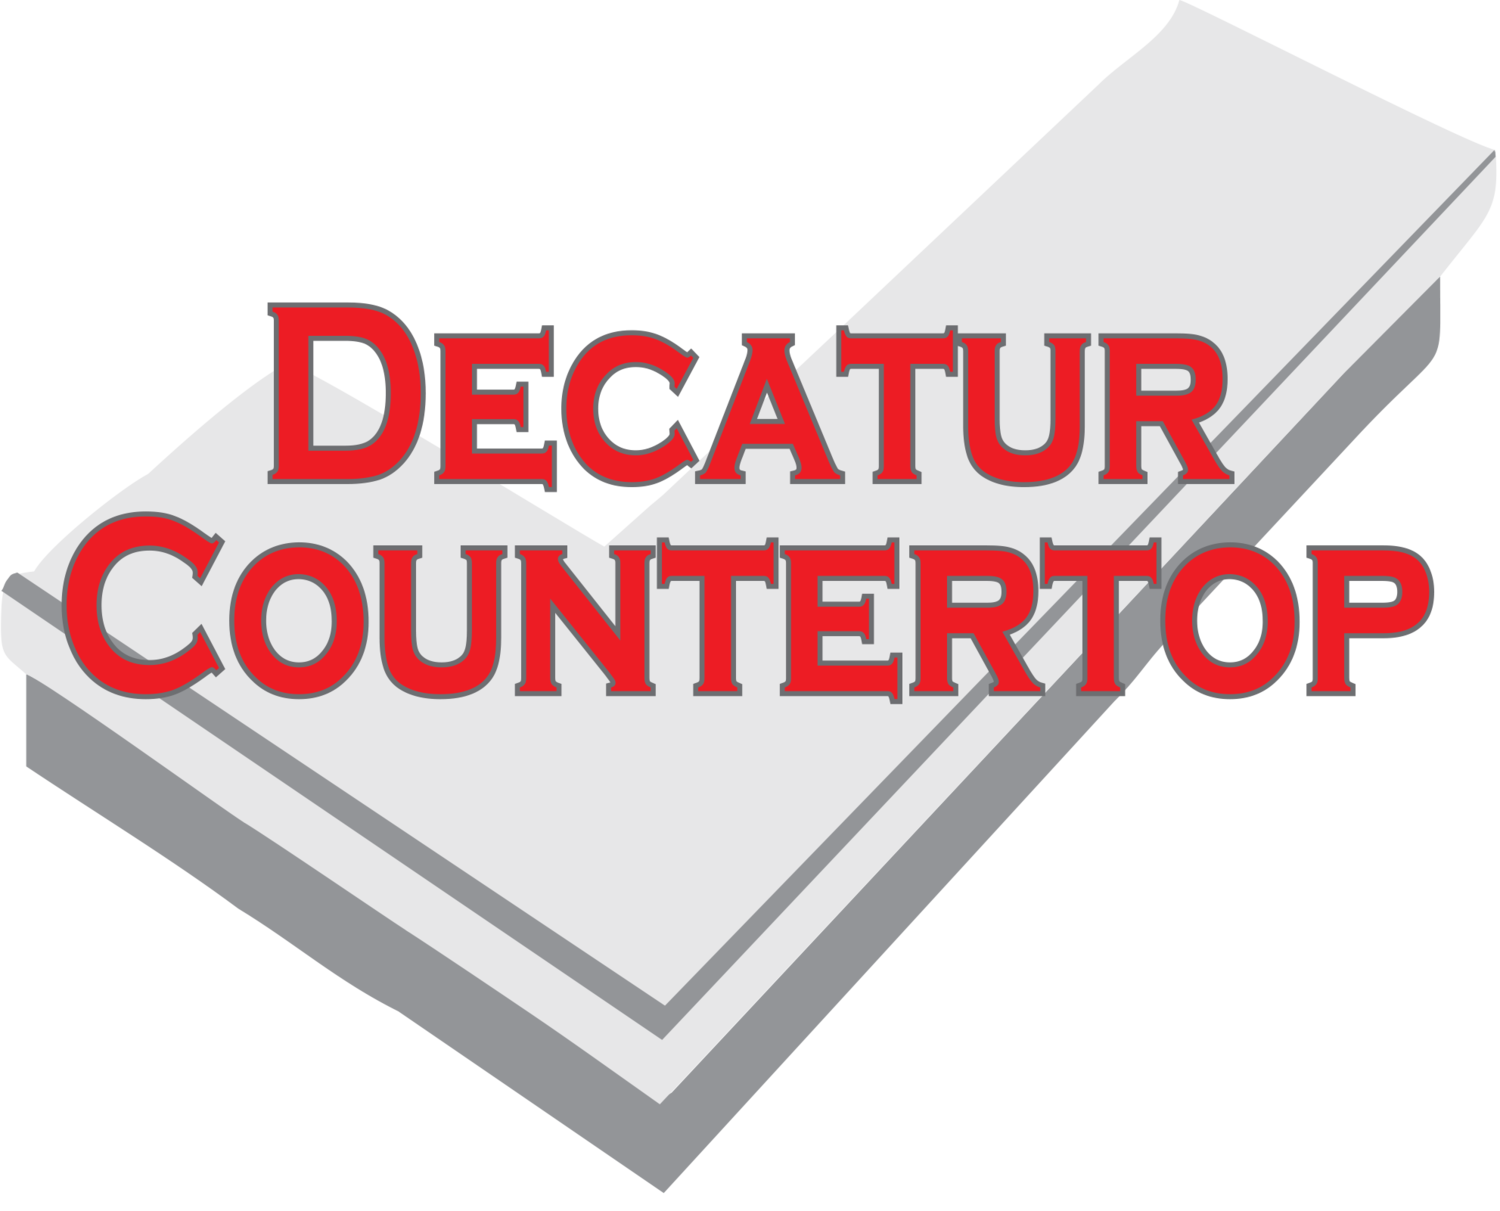 Decatur Countertop